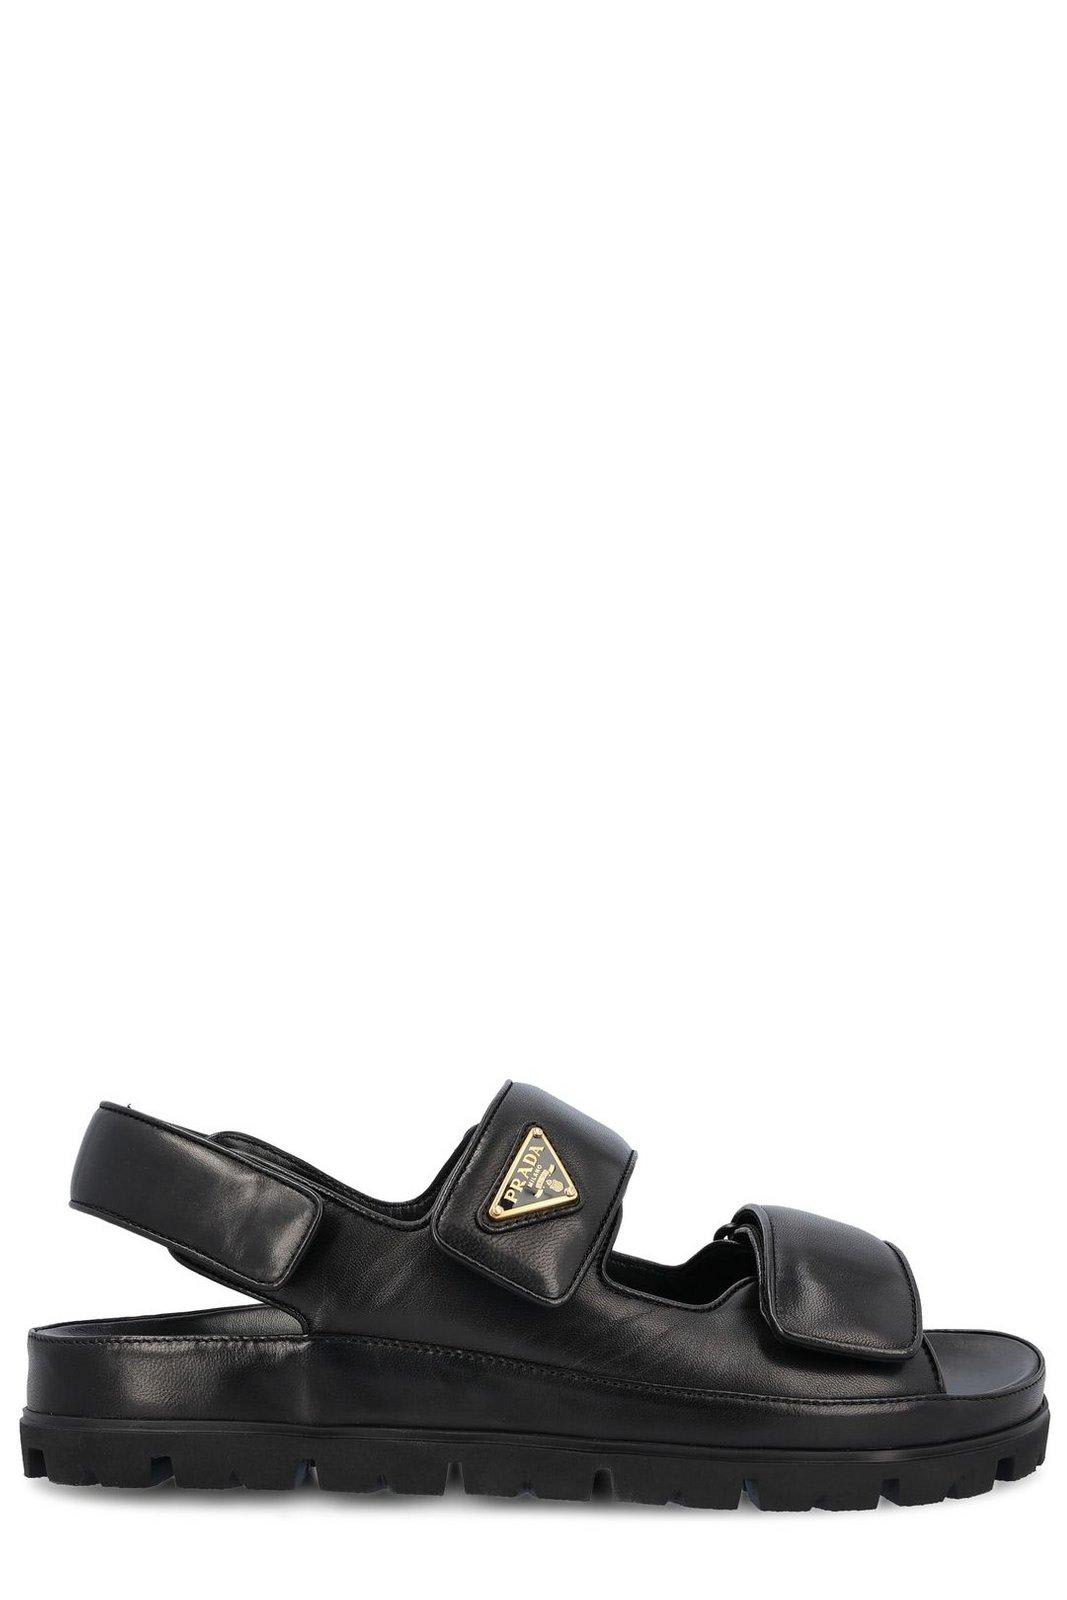 Prada Triangle-logo Sandals